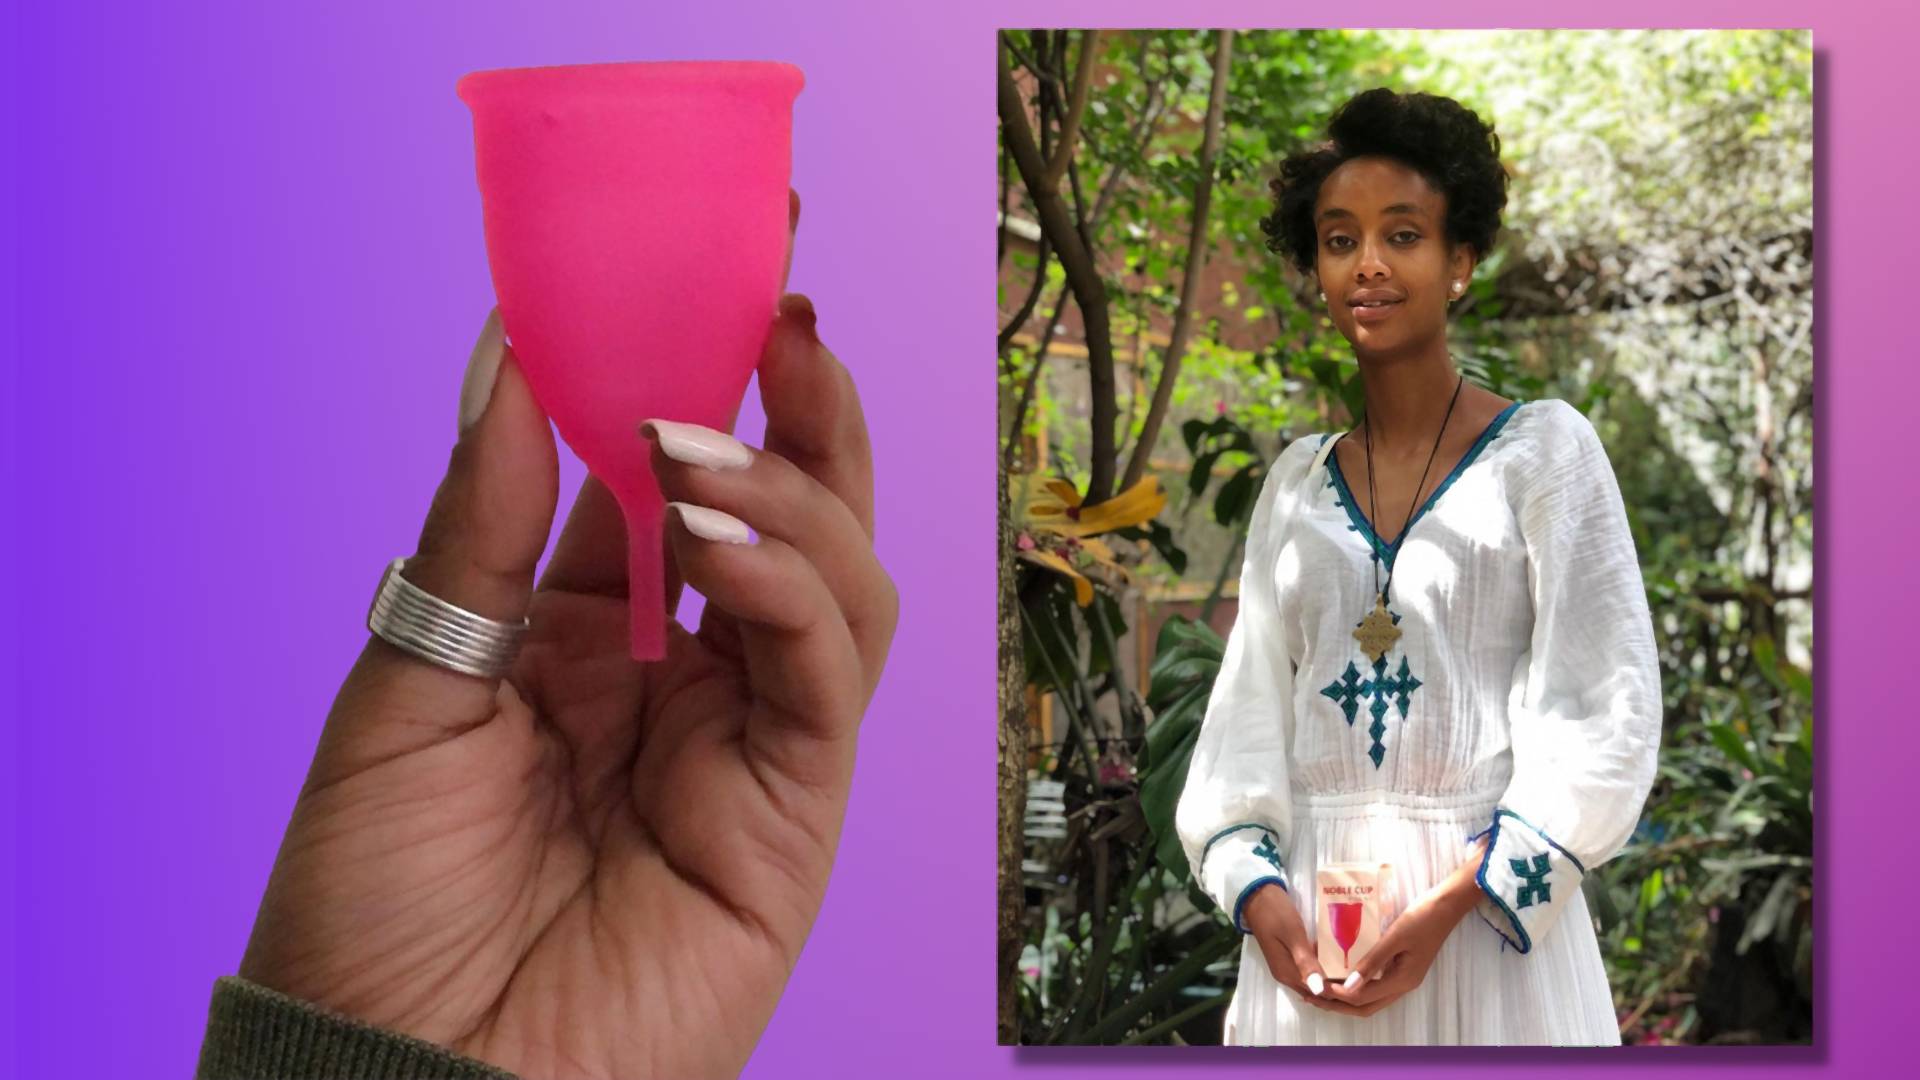 Sprowadziła kubeczki menstruacyjne do Etiopii. "Celnicy myśleli, że to części samochodowe"